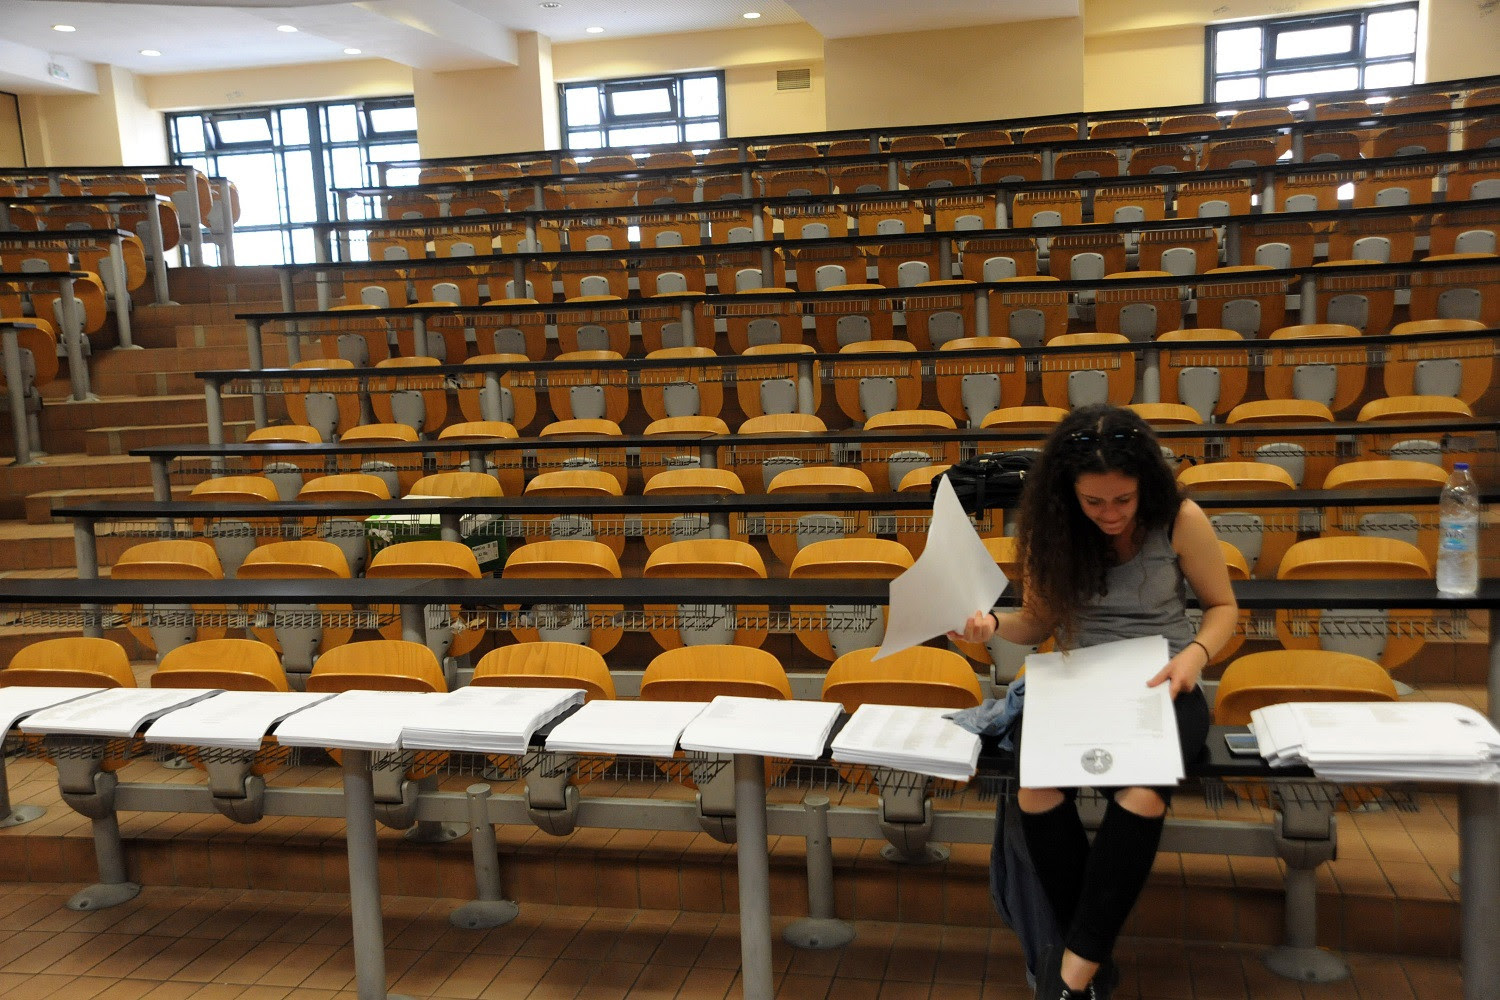 Σάλος στο Πανεπιστήμιο Ιωαννίνων: Καθηγητής έβγαλε προς... πώληση σημειώσεις έναντι 8 ευρώ!